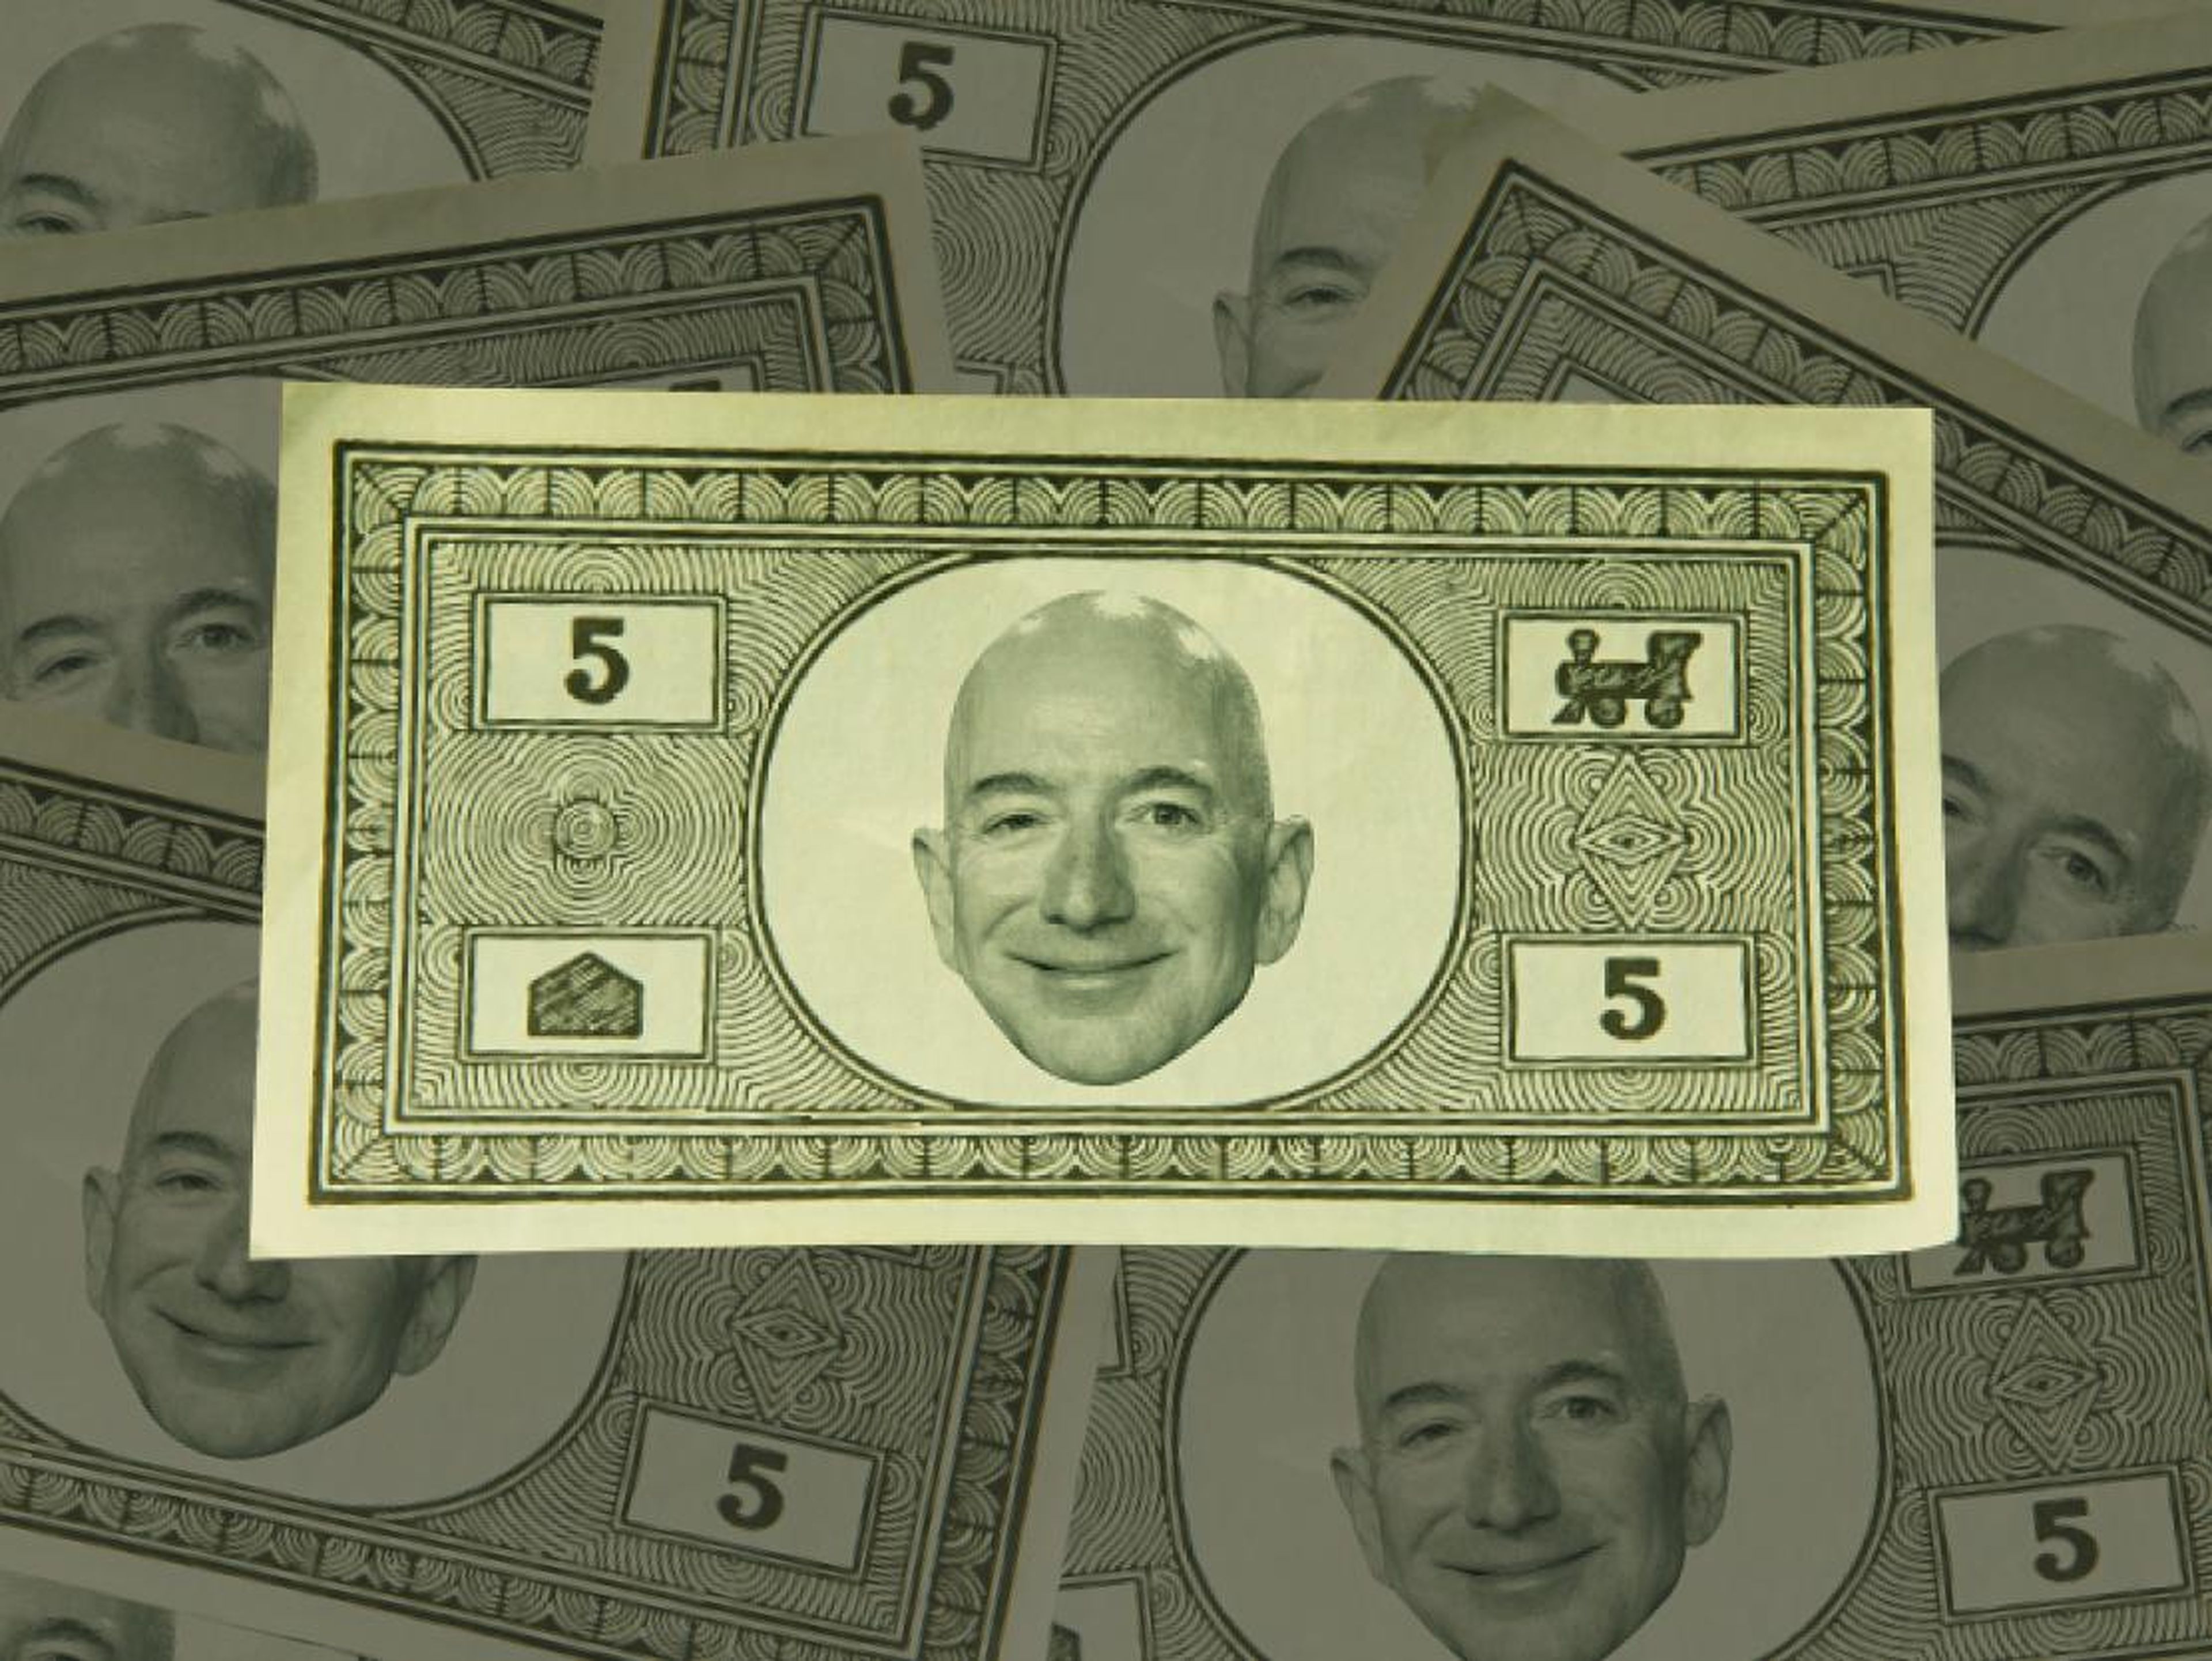 Un trabajador de Amazon cuenta a BI que utilizan billetes con la cara de Bezos. Así es como se los imagina un artista.